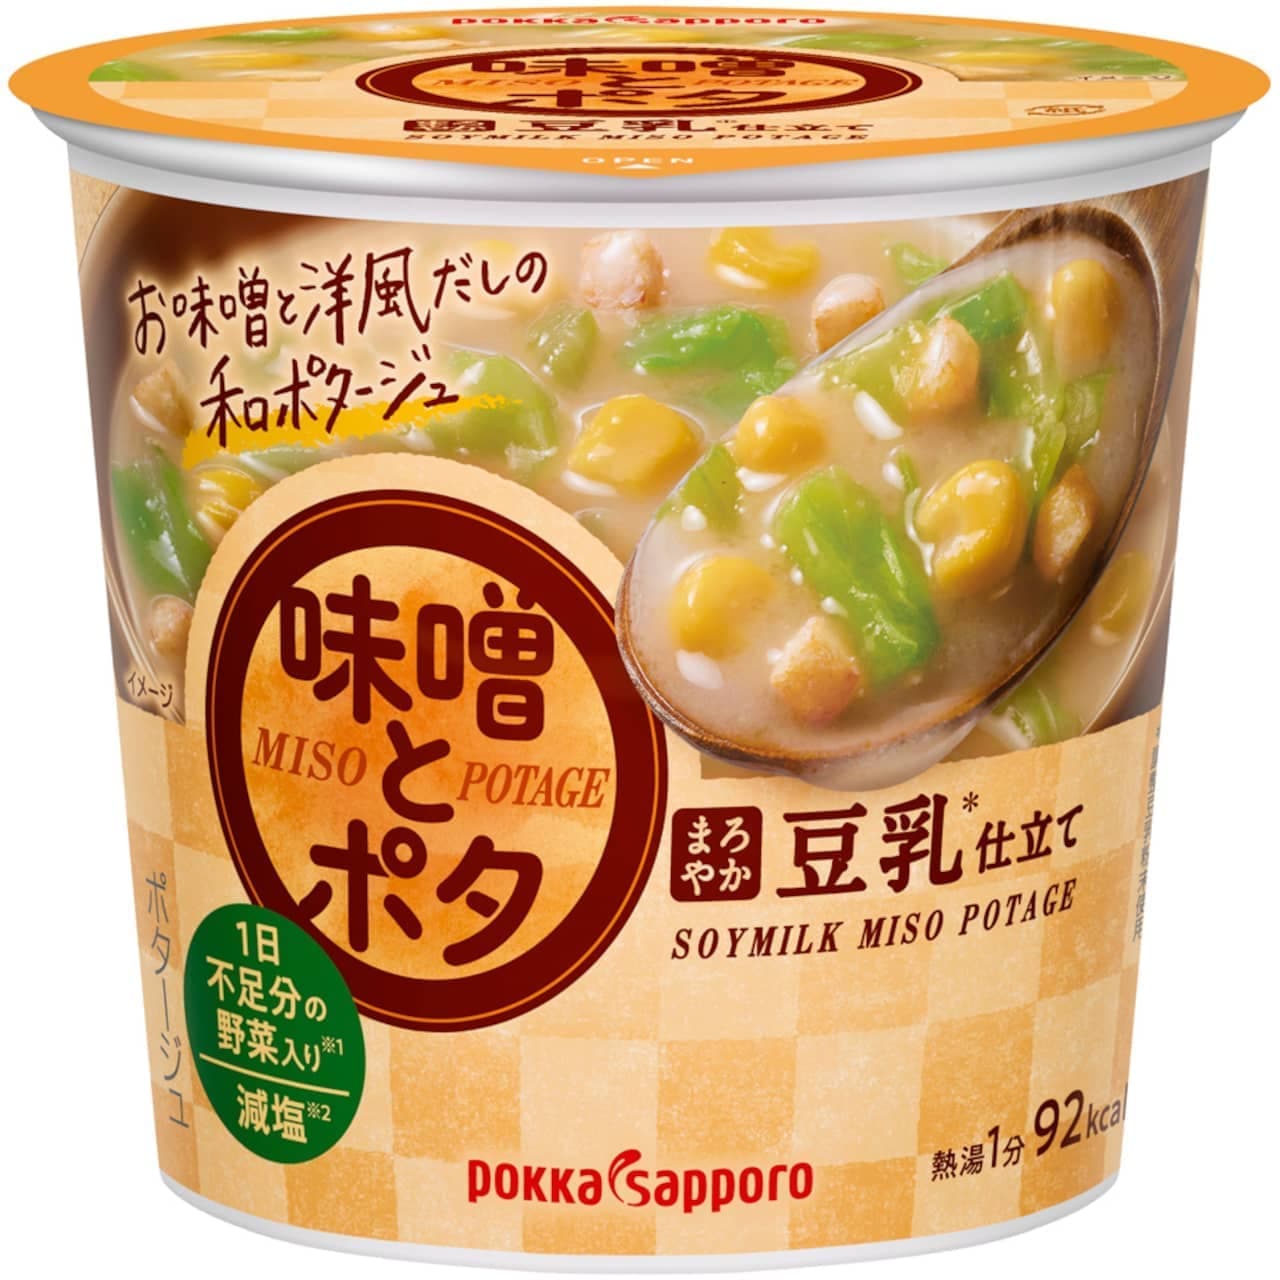 カップスープ「味噌とポタ」味噌と洋風だしの和のポタージュ